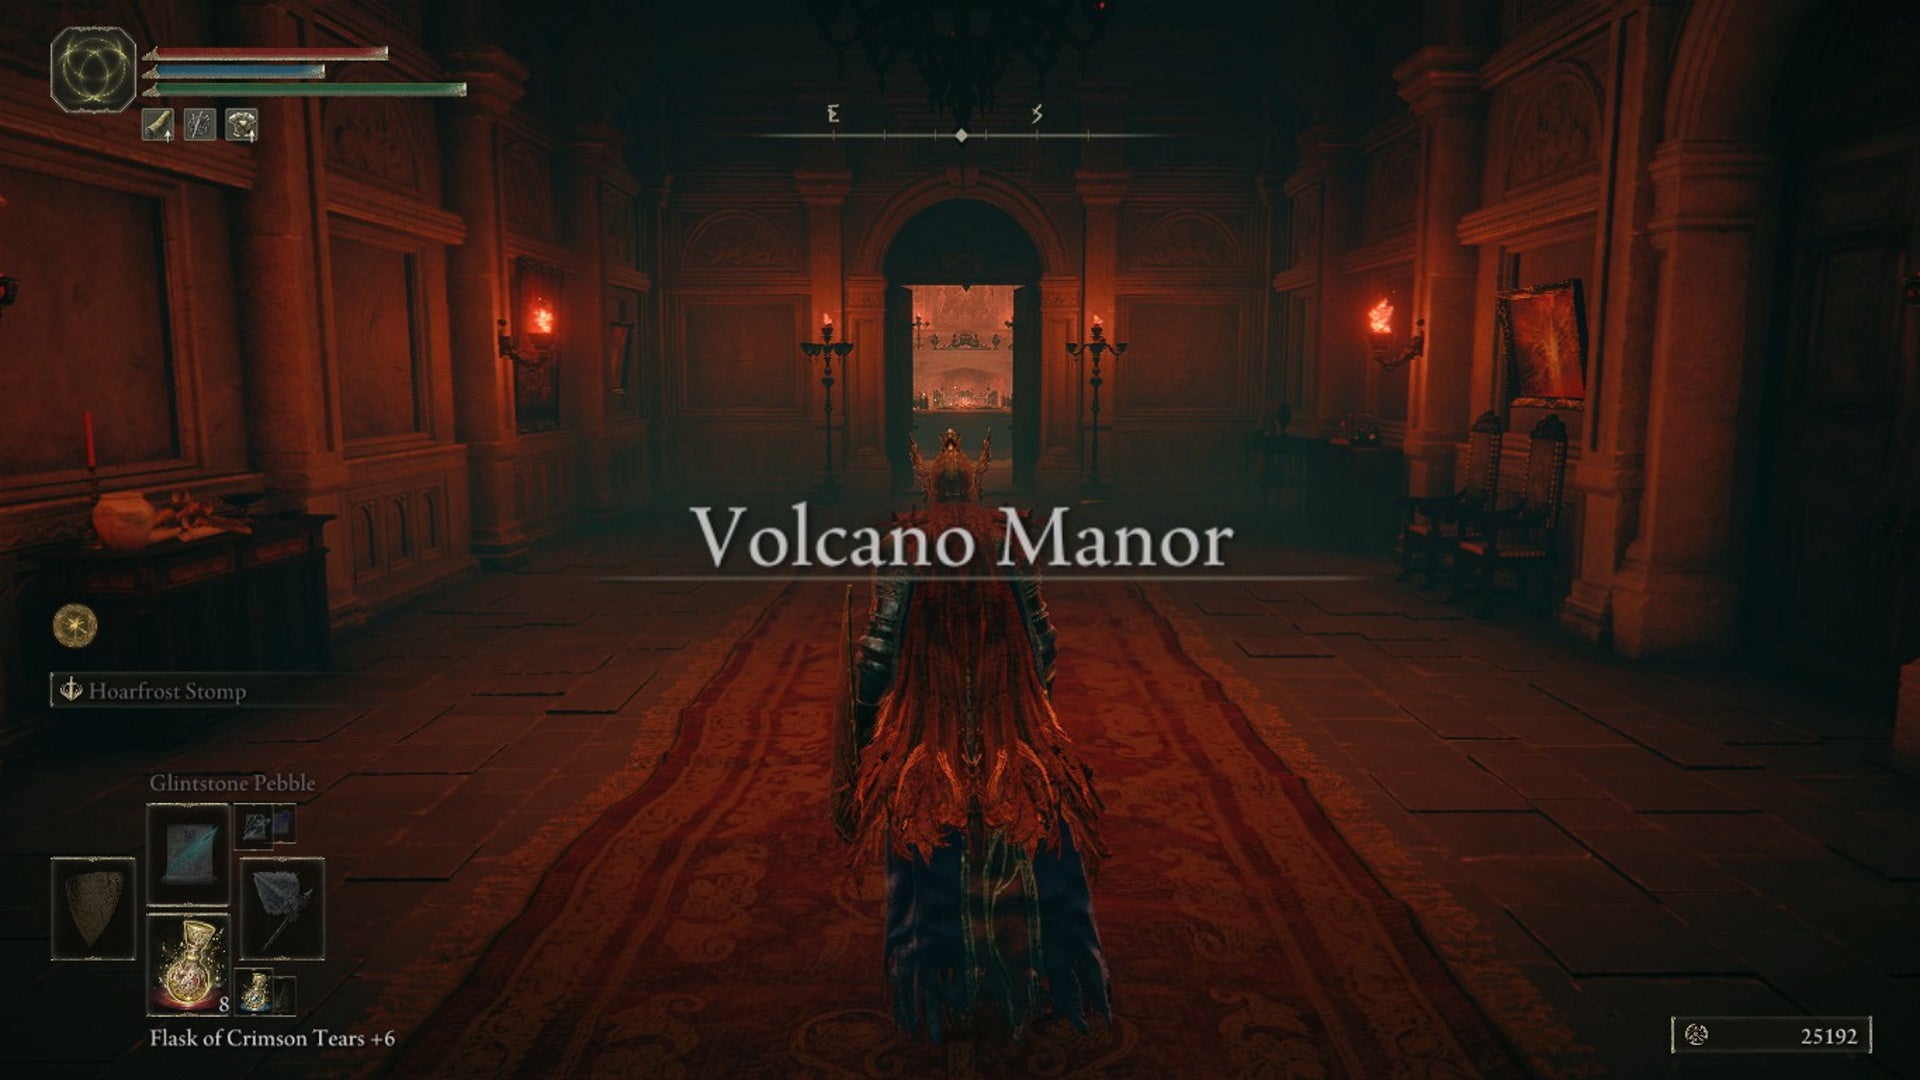 Elden Ring Volcano Manor quest walkthrough Should you join Volcano